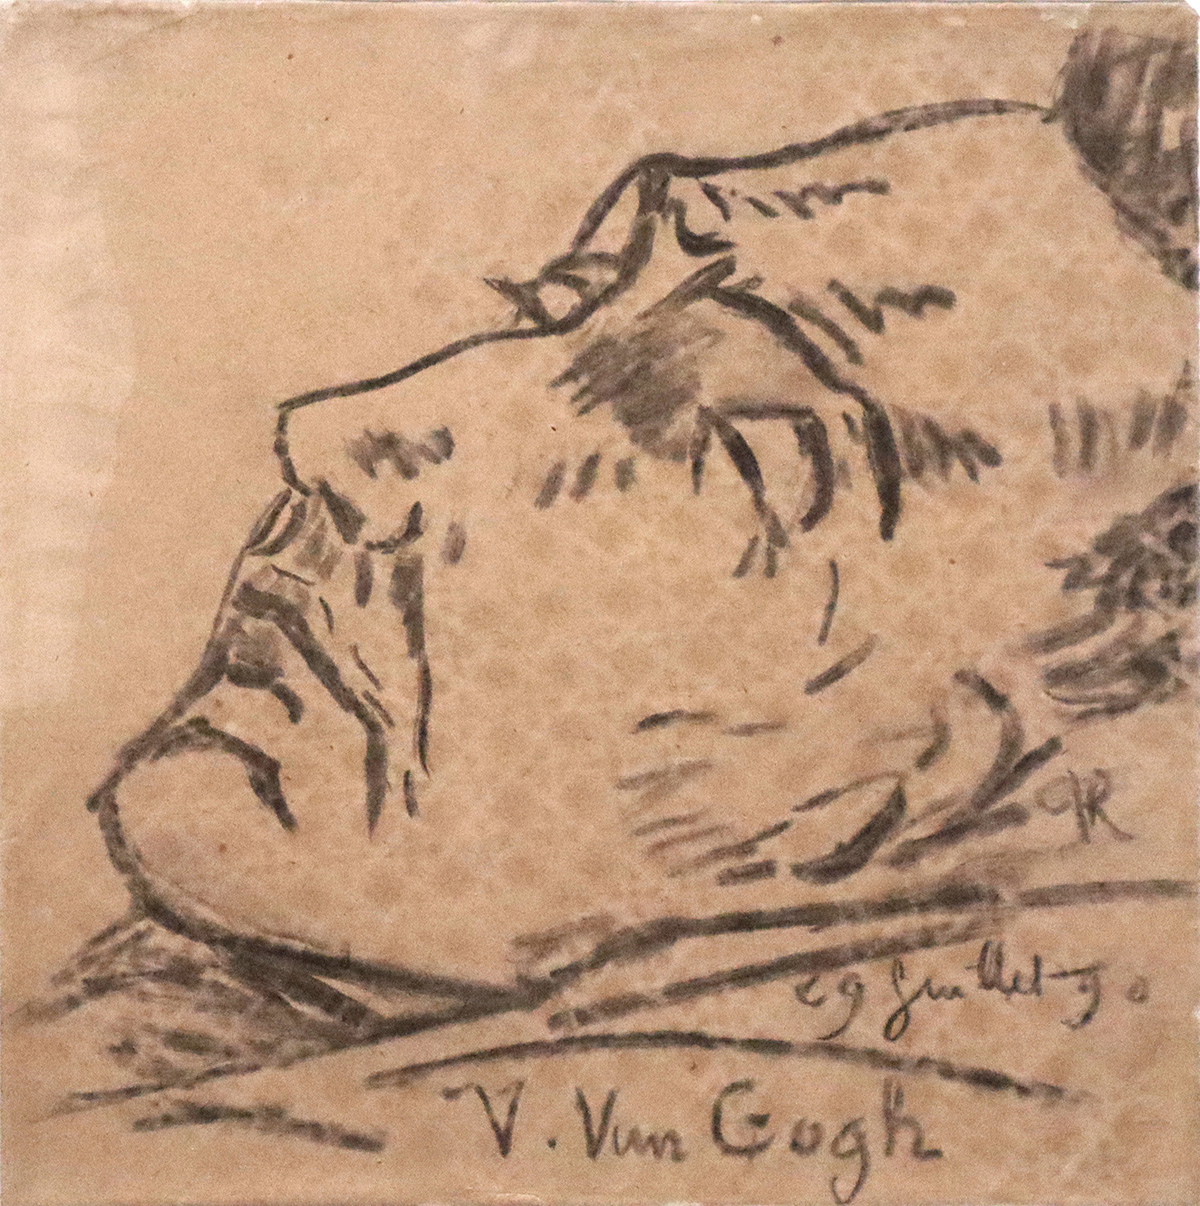 Dessin mortuaire de Van Gogh réalisé par le Dr Paul Gachet le 29 juillet 1890 
Photographie © Raymond Martinez le 9 novembre 2023 lors de l’exposition
« Van Gogh à Auvers » au Musée d’Orsay
